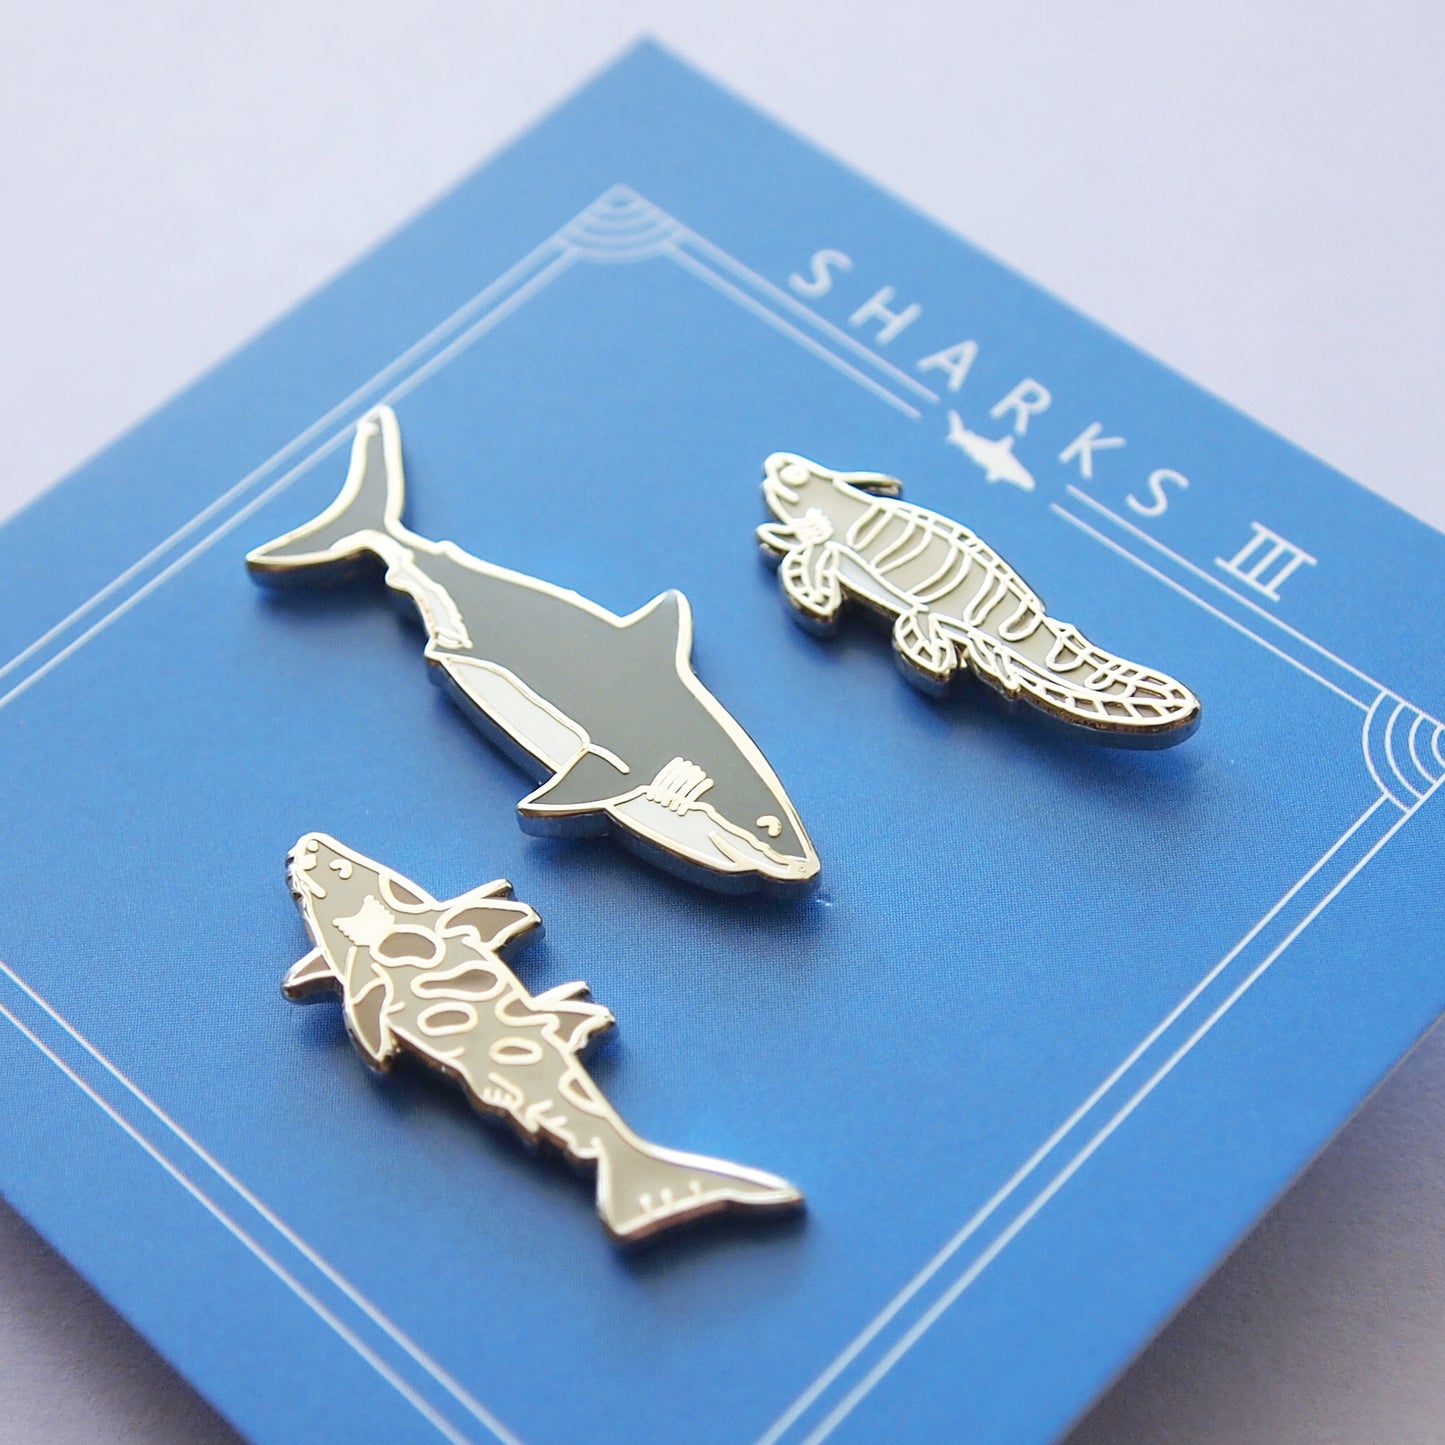 sharks iii pins